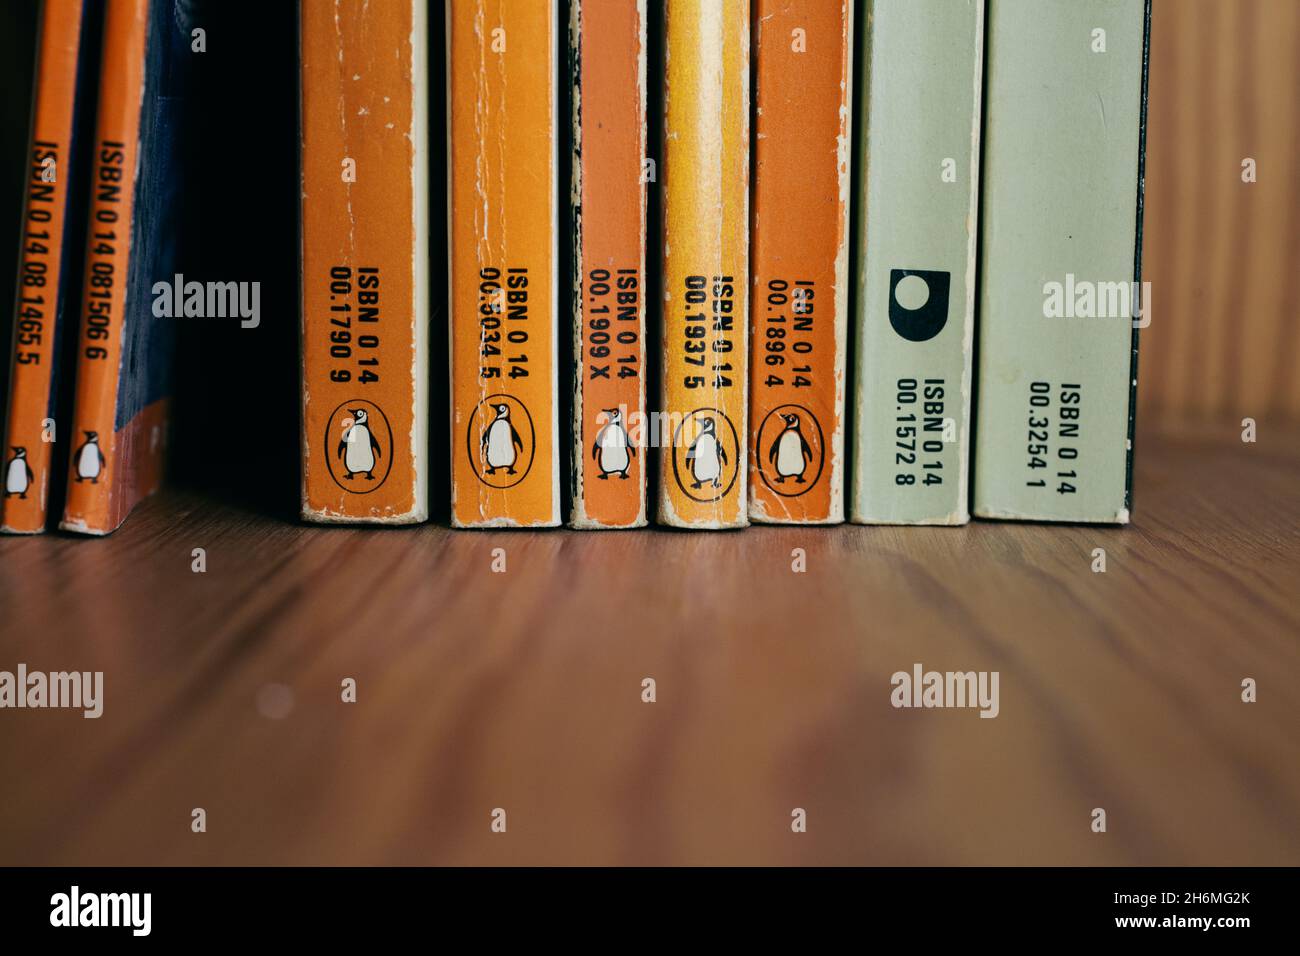 Penguin classics series fotografías e imágenes de alta resolución - Alamy